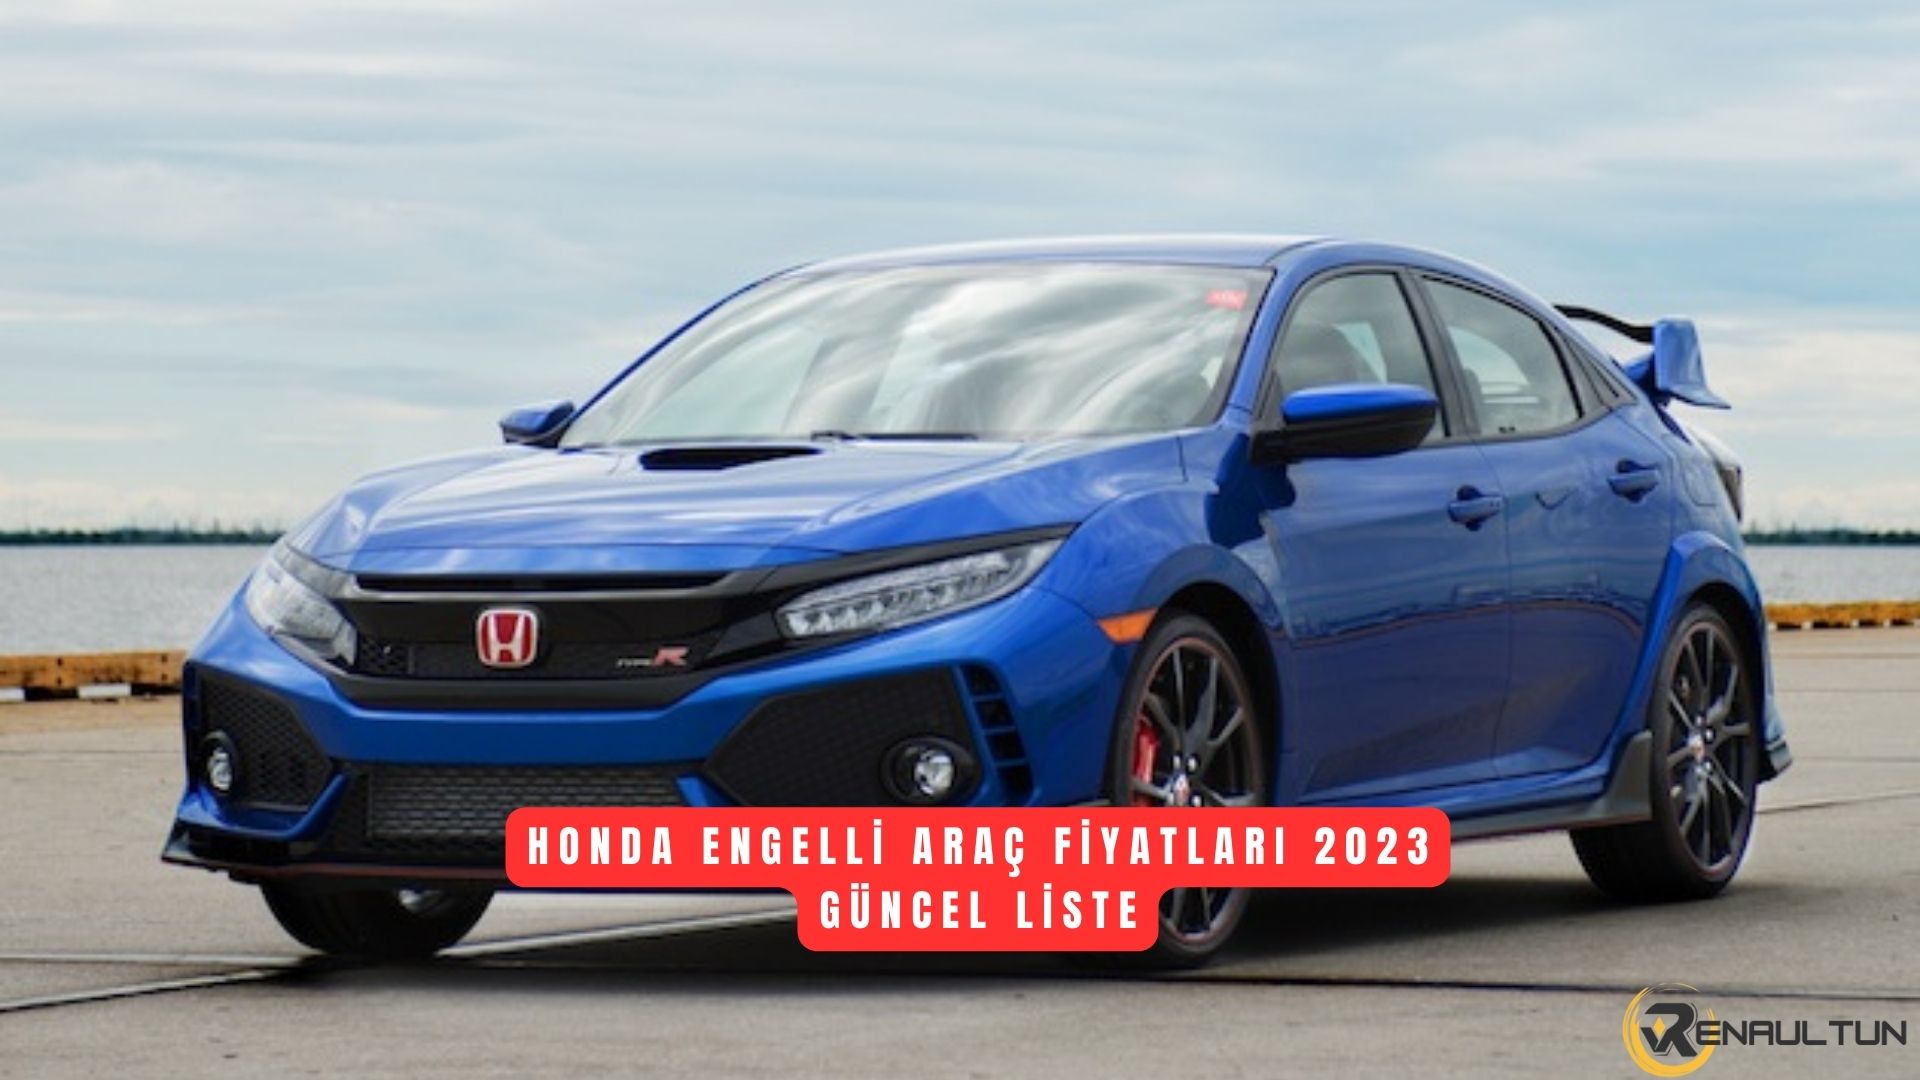 Honda Engelli Araç Fiyat Listesi 2023